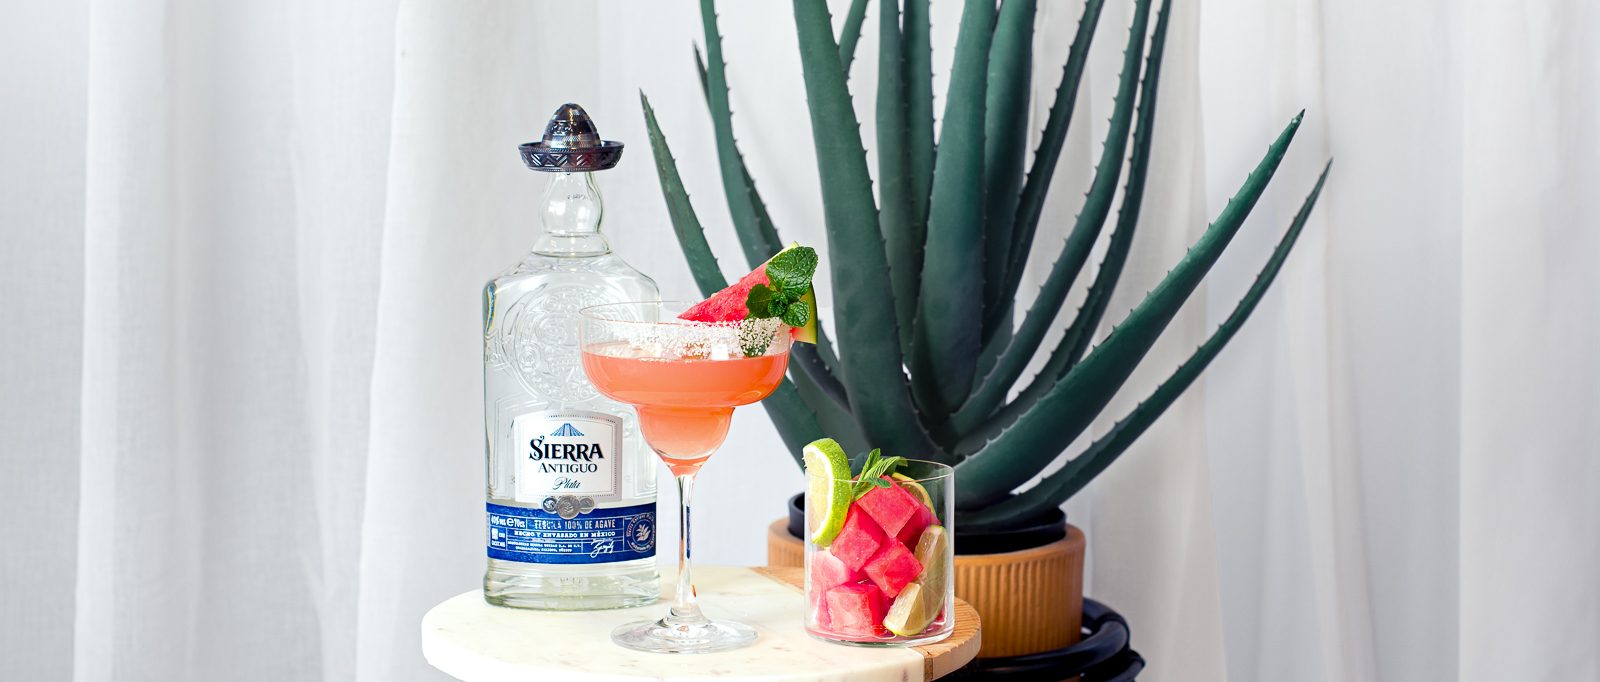 Sierra Watermelon Margarita with a bottle of Sierra tequila